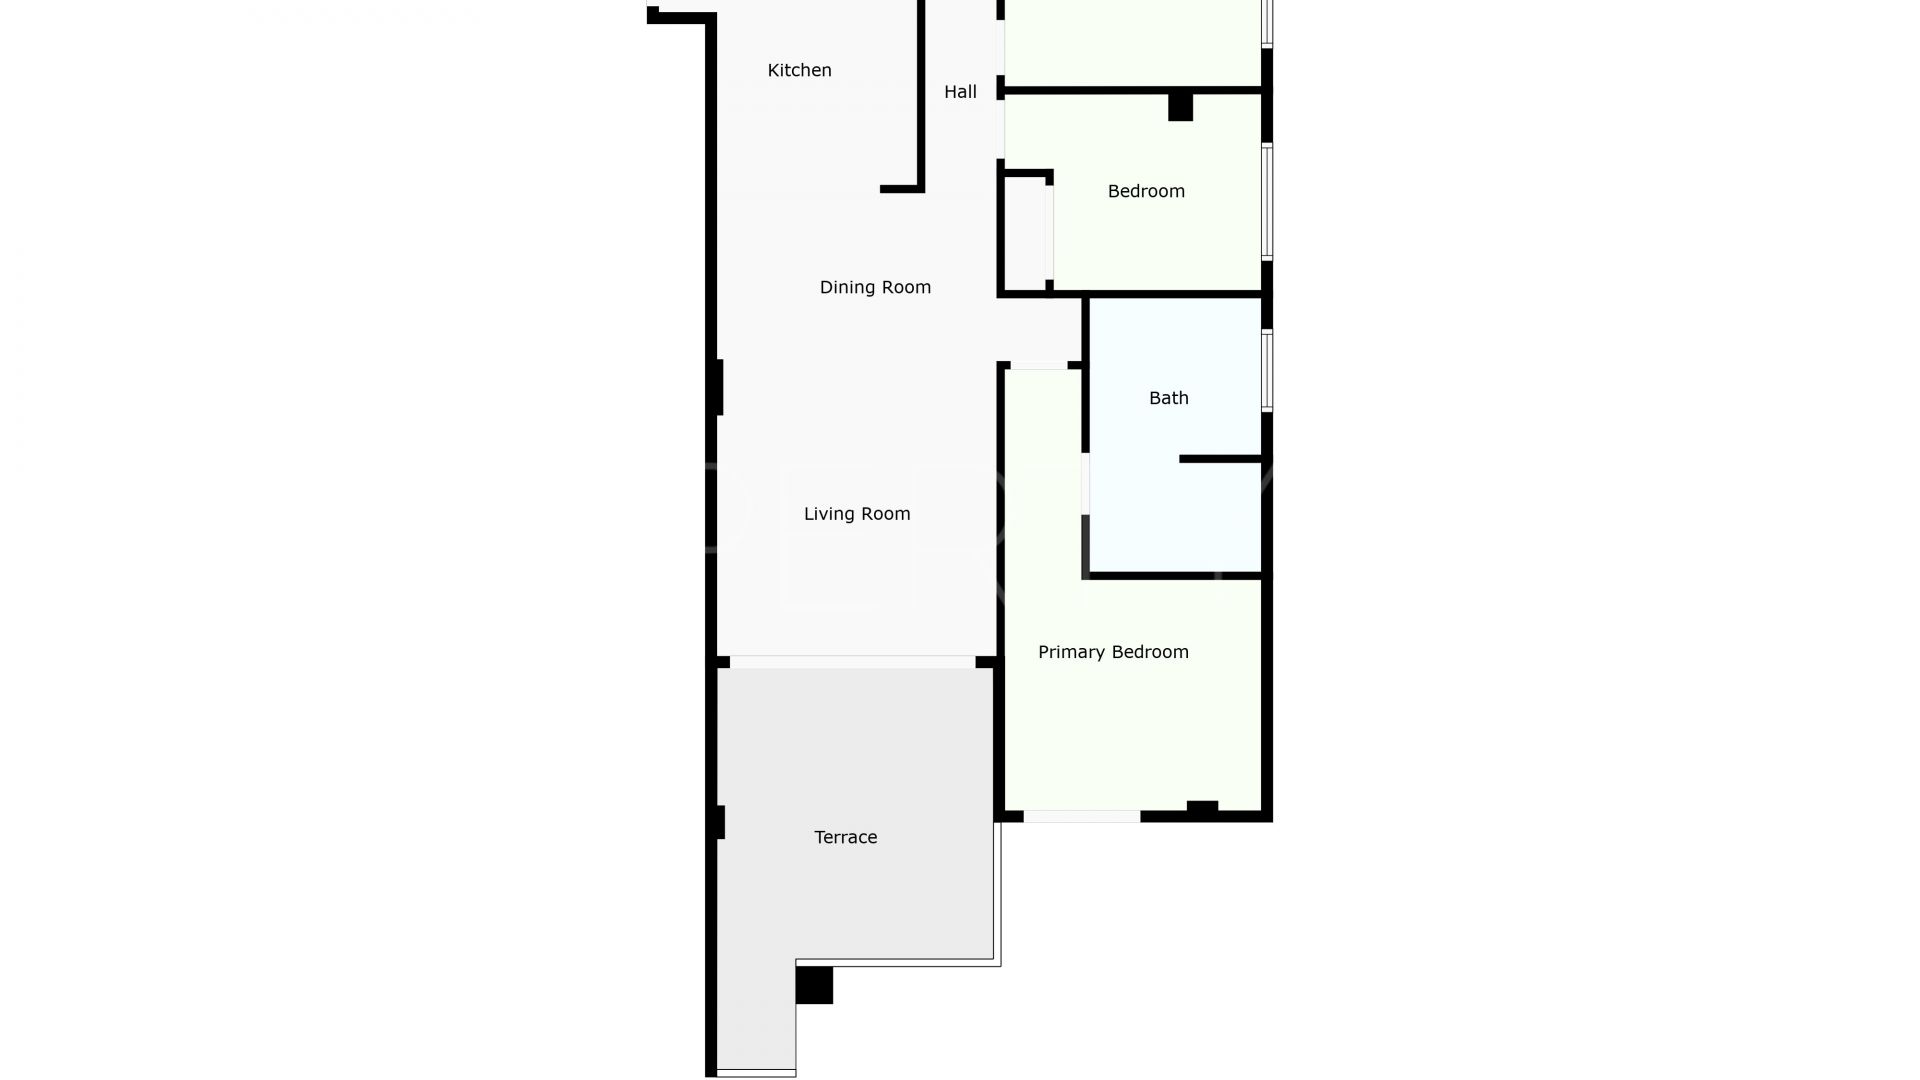 Buy Cala de Mijas ground floor apartment with 3 bedrooms